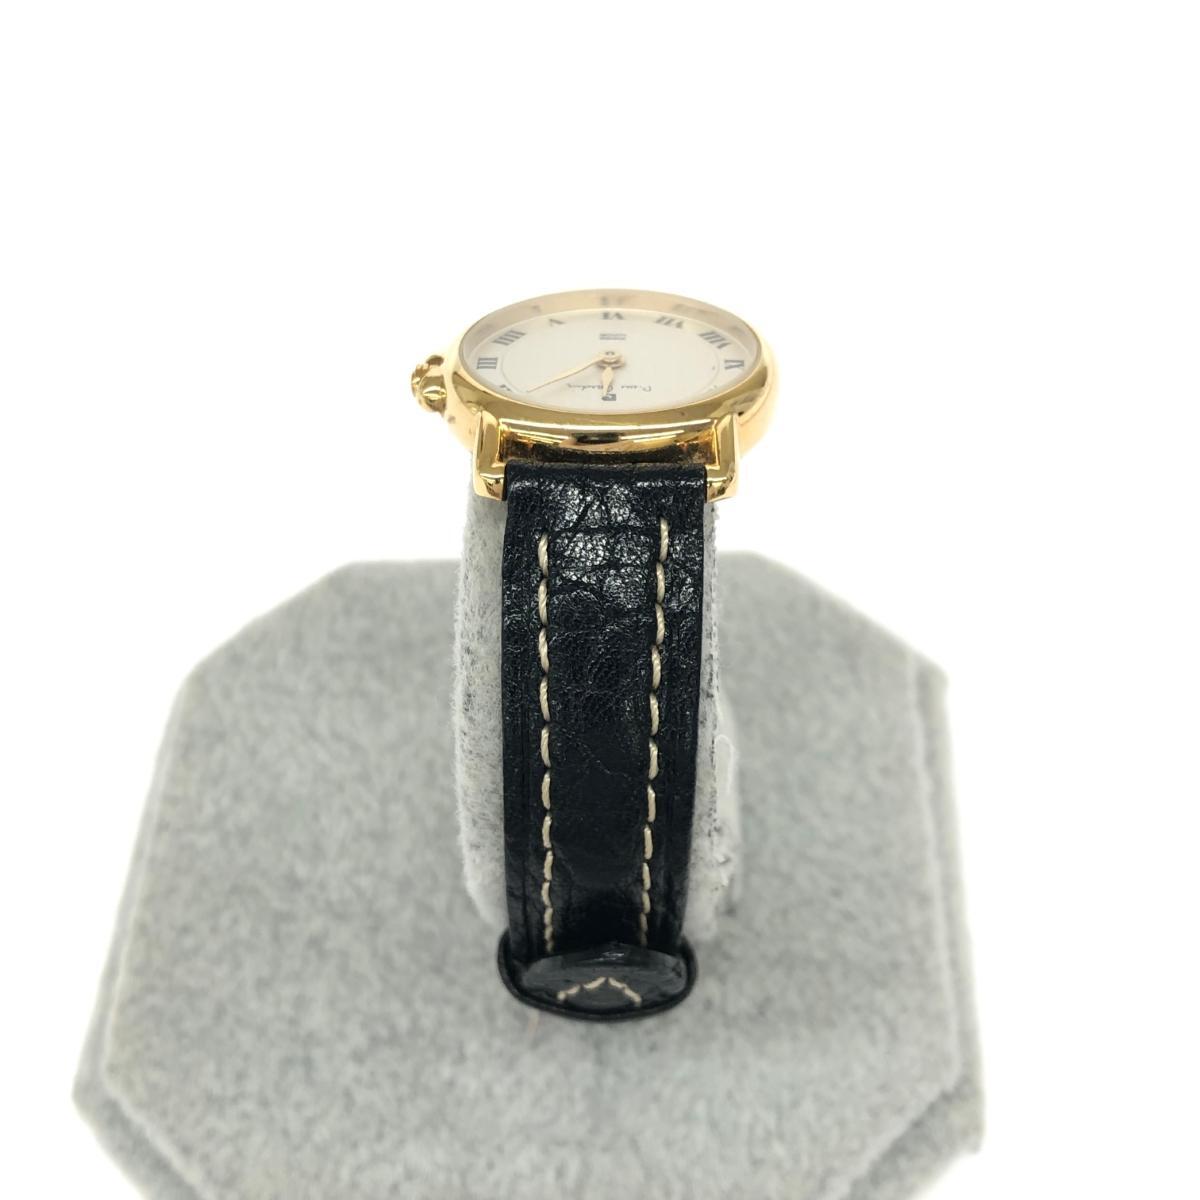 ◆pierre cardin ピエールカルダン 腕時計 ◆NF-LRO-5 ブラック/ゴールドカラー SS×レザー レディース ウォッチ watch_画像3